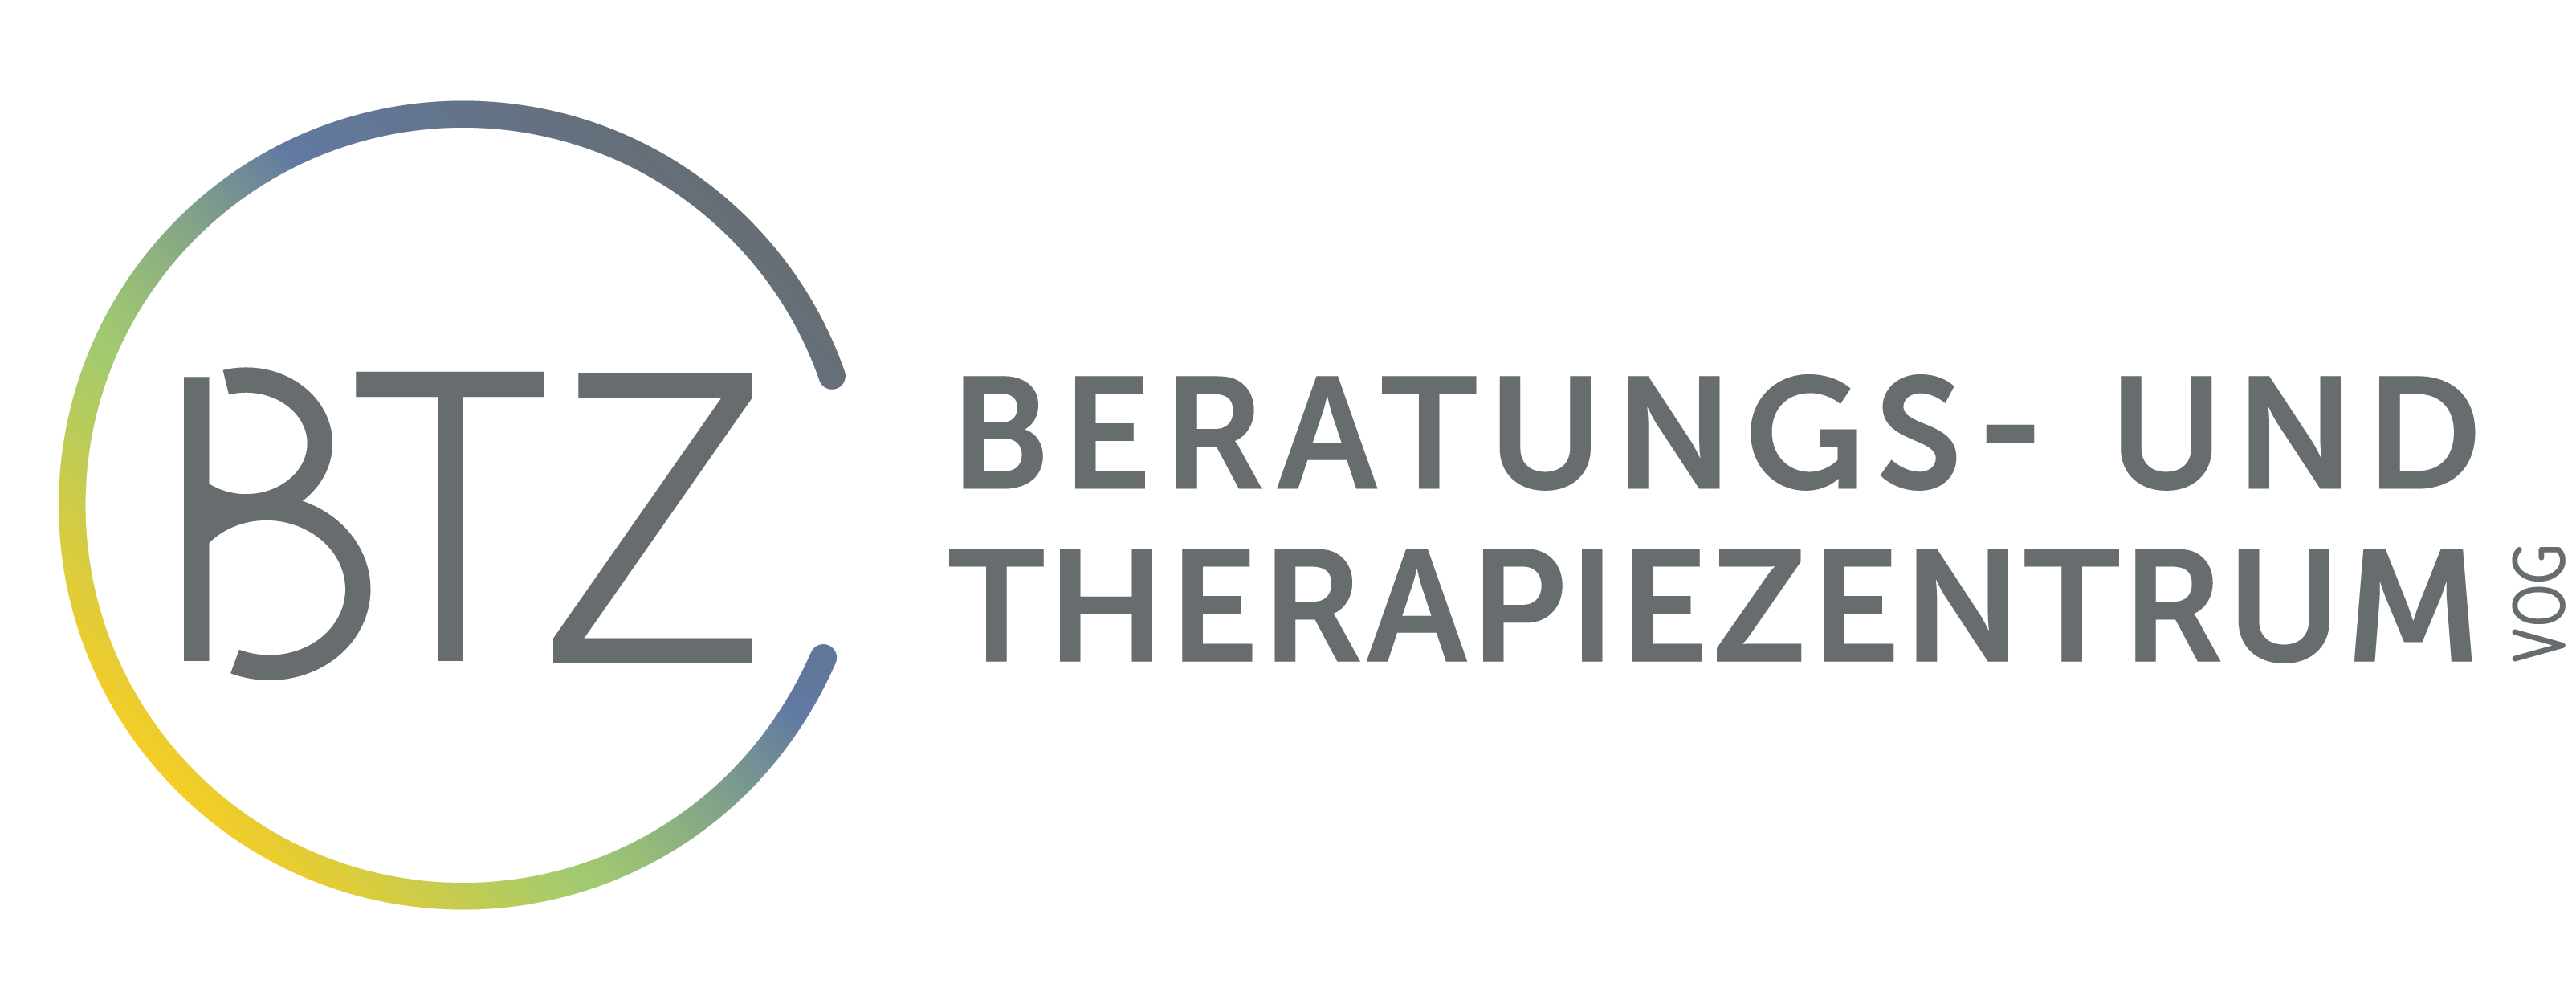 BTZ - Beratungs- und Therapiezentrum VoG